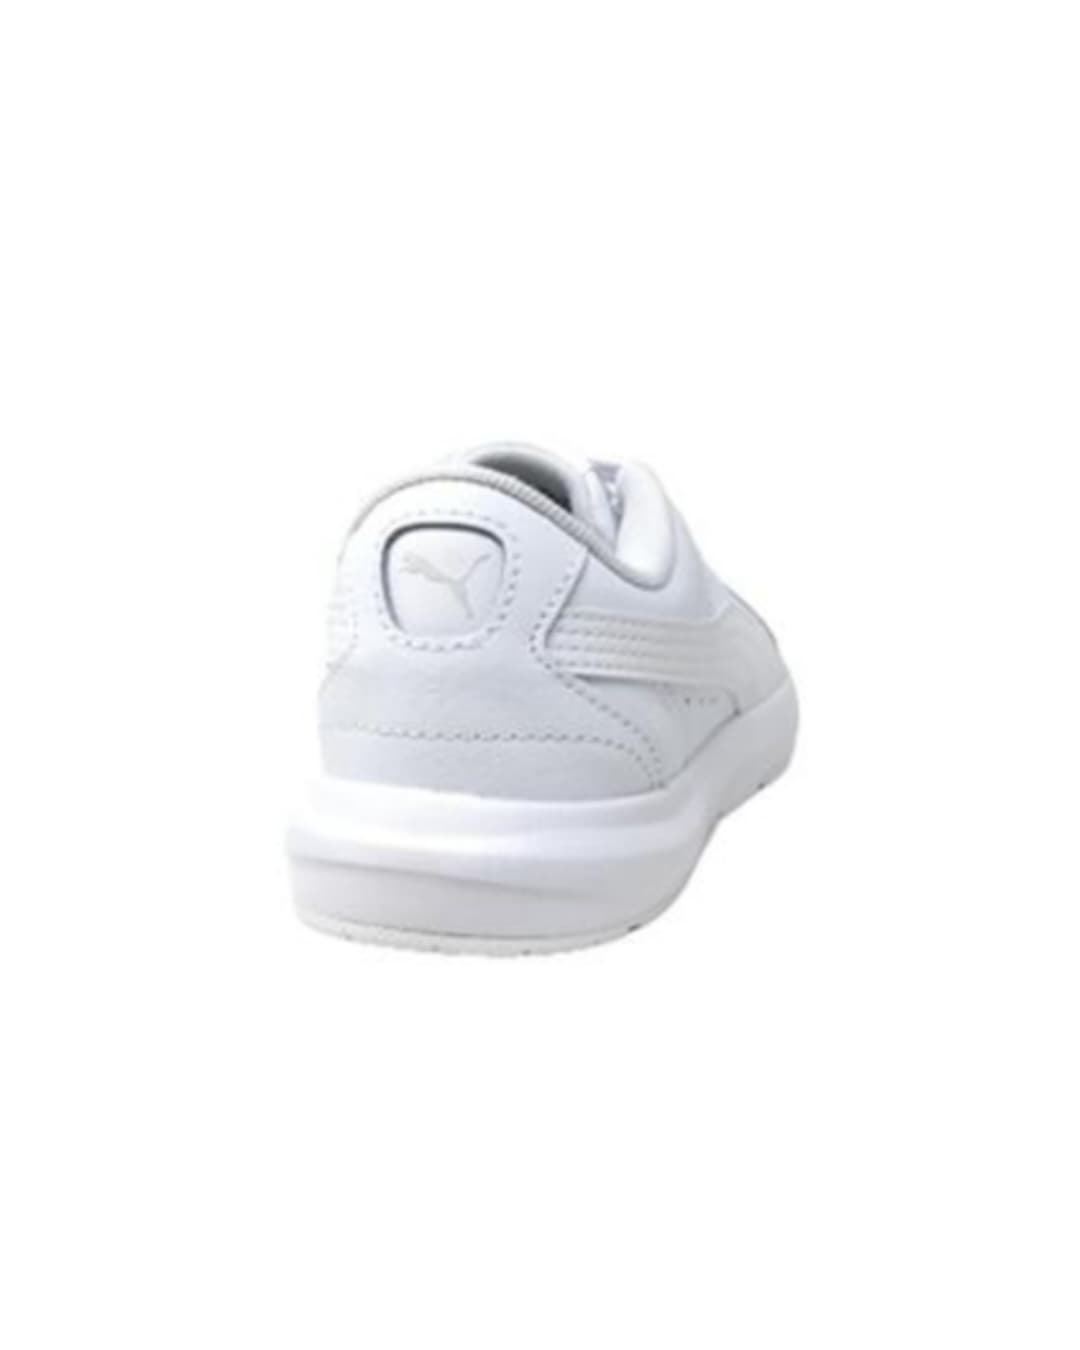 Puma Zapatillas para niños Evolve Court Jr Blanco con cordón - Imagen 2